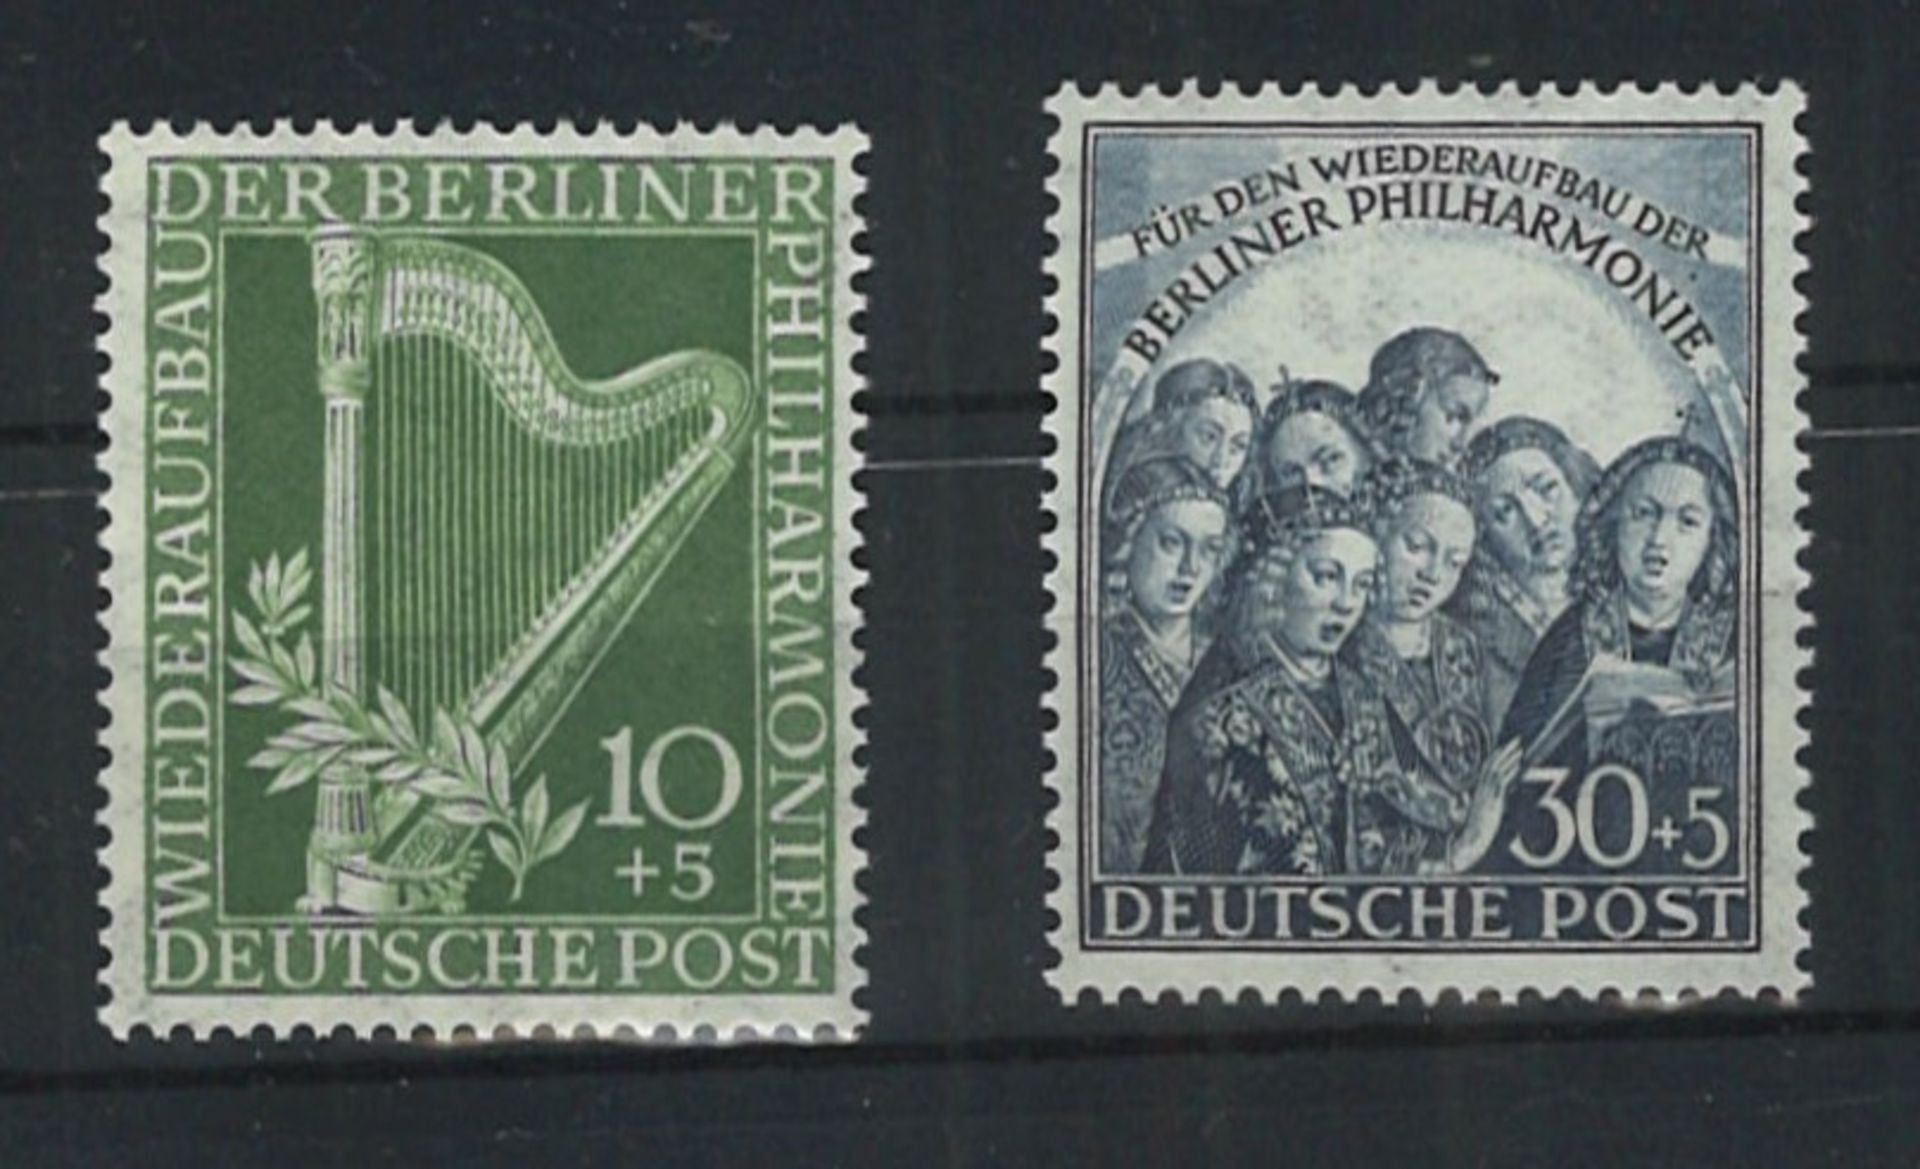 Berlin 1950, postfrisch. MiNr. 72-73